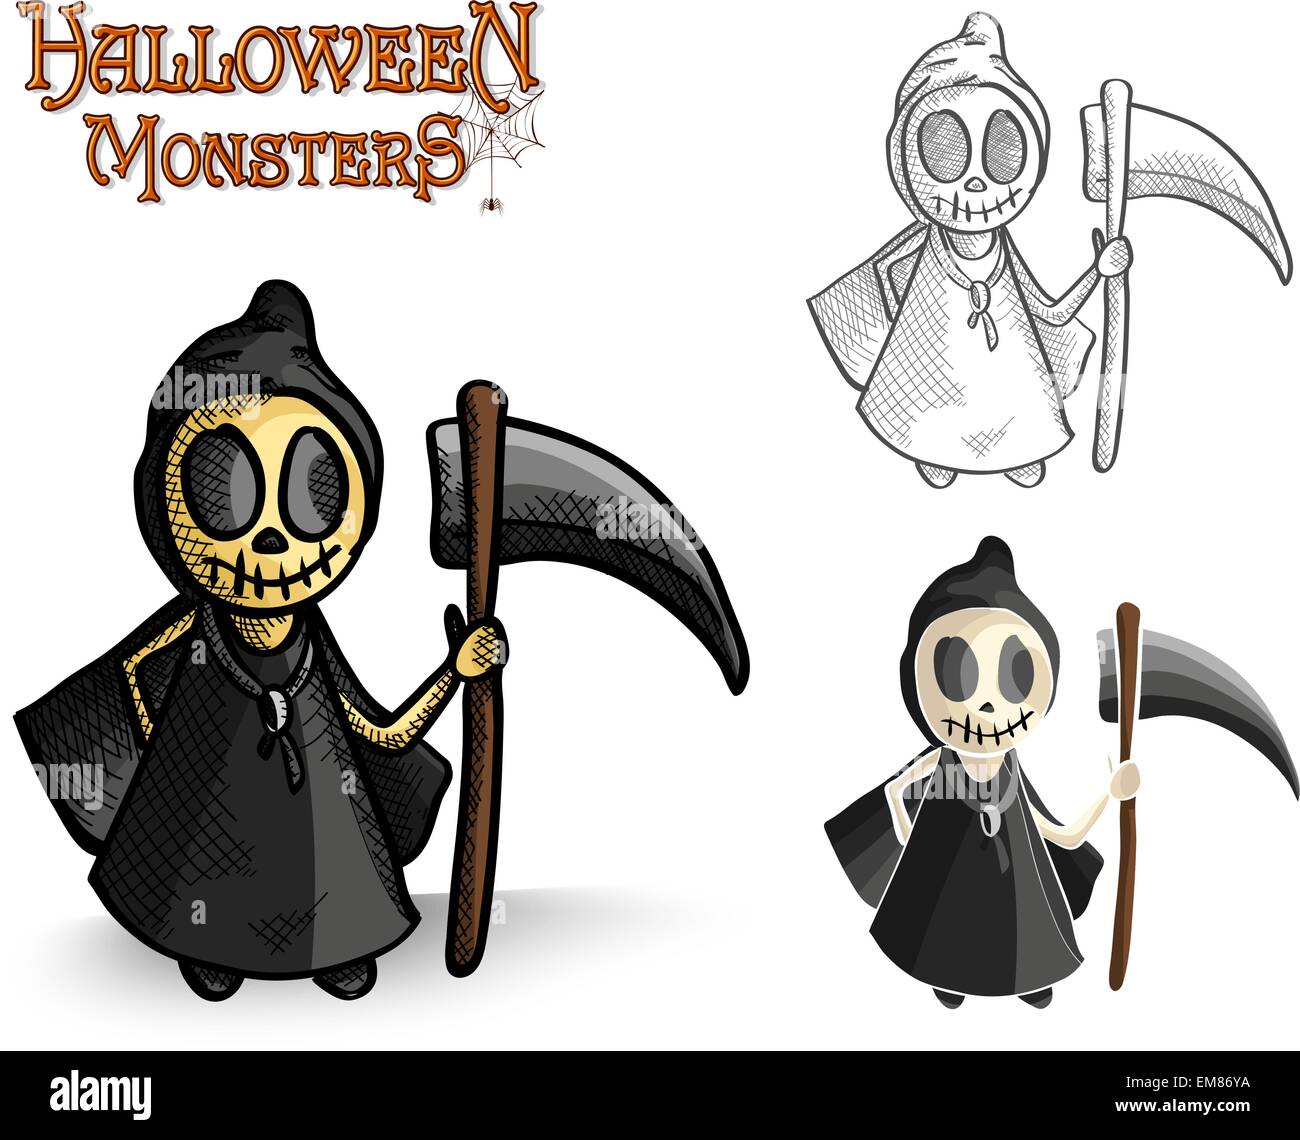 Halloween Monster Spuk Reaper Abbildung EPS10 Datei Stock Vektor